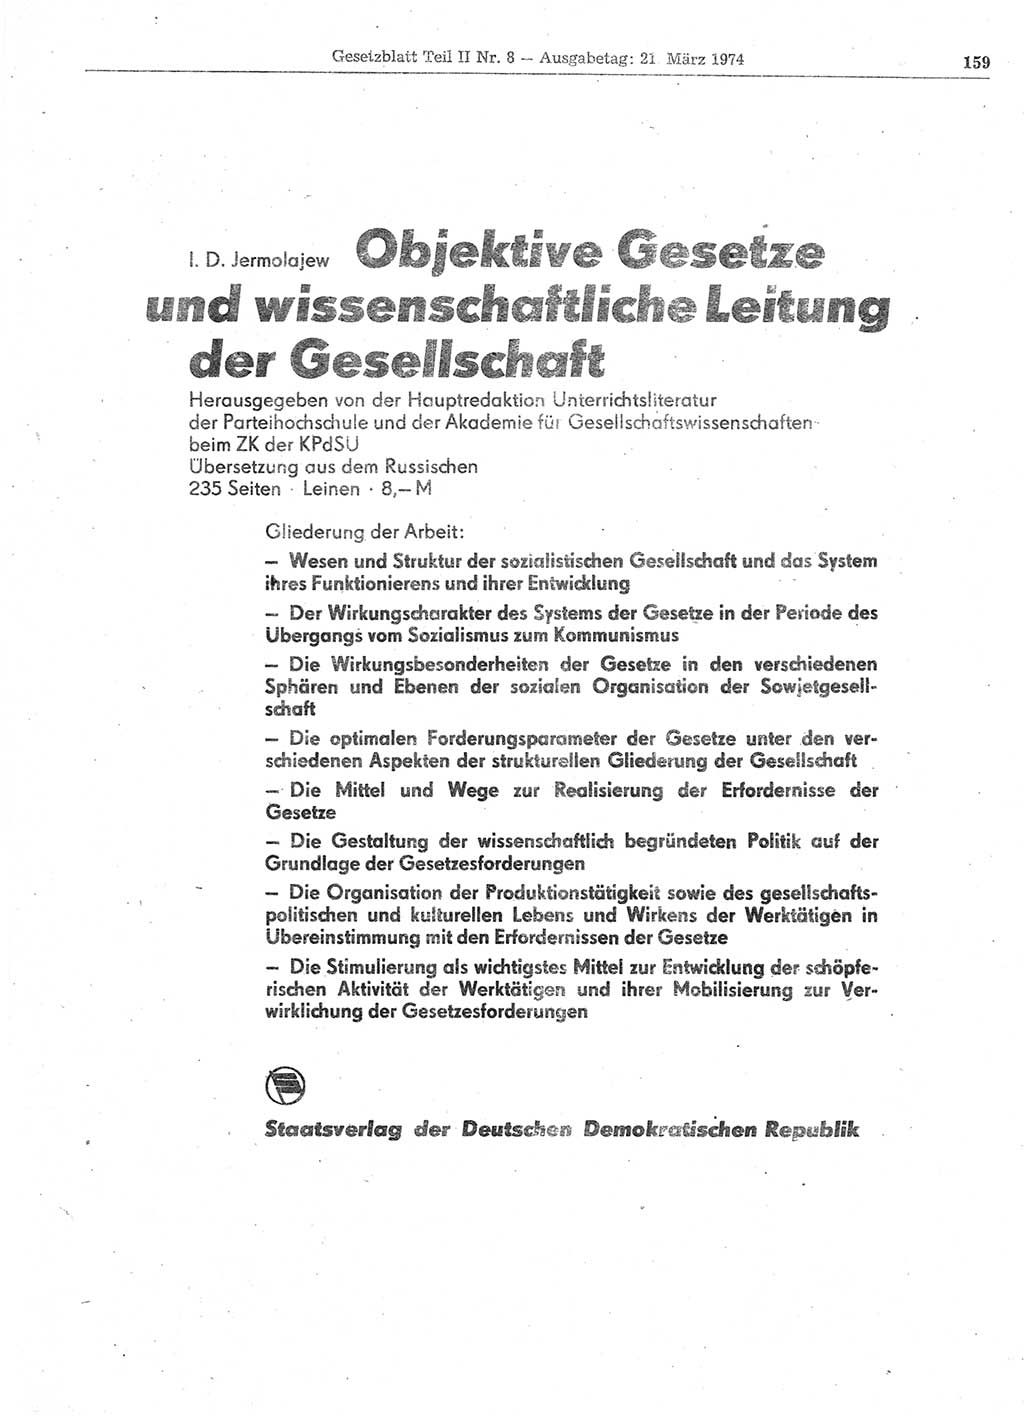 Gesetzblatt (GBl.) der Deutschen Demokratischen Republik (DDR) Teil ⅠⅠ 1974, Seite 159 (GBl. DDR ⅠⅠ 1974, S. 159)